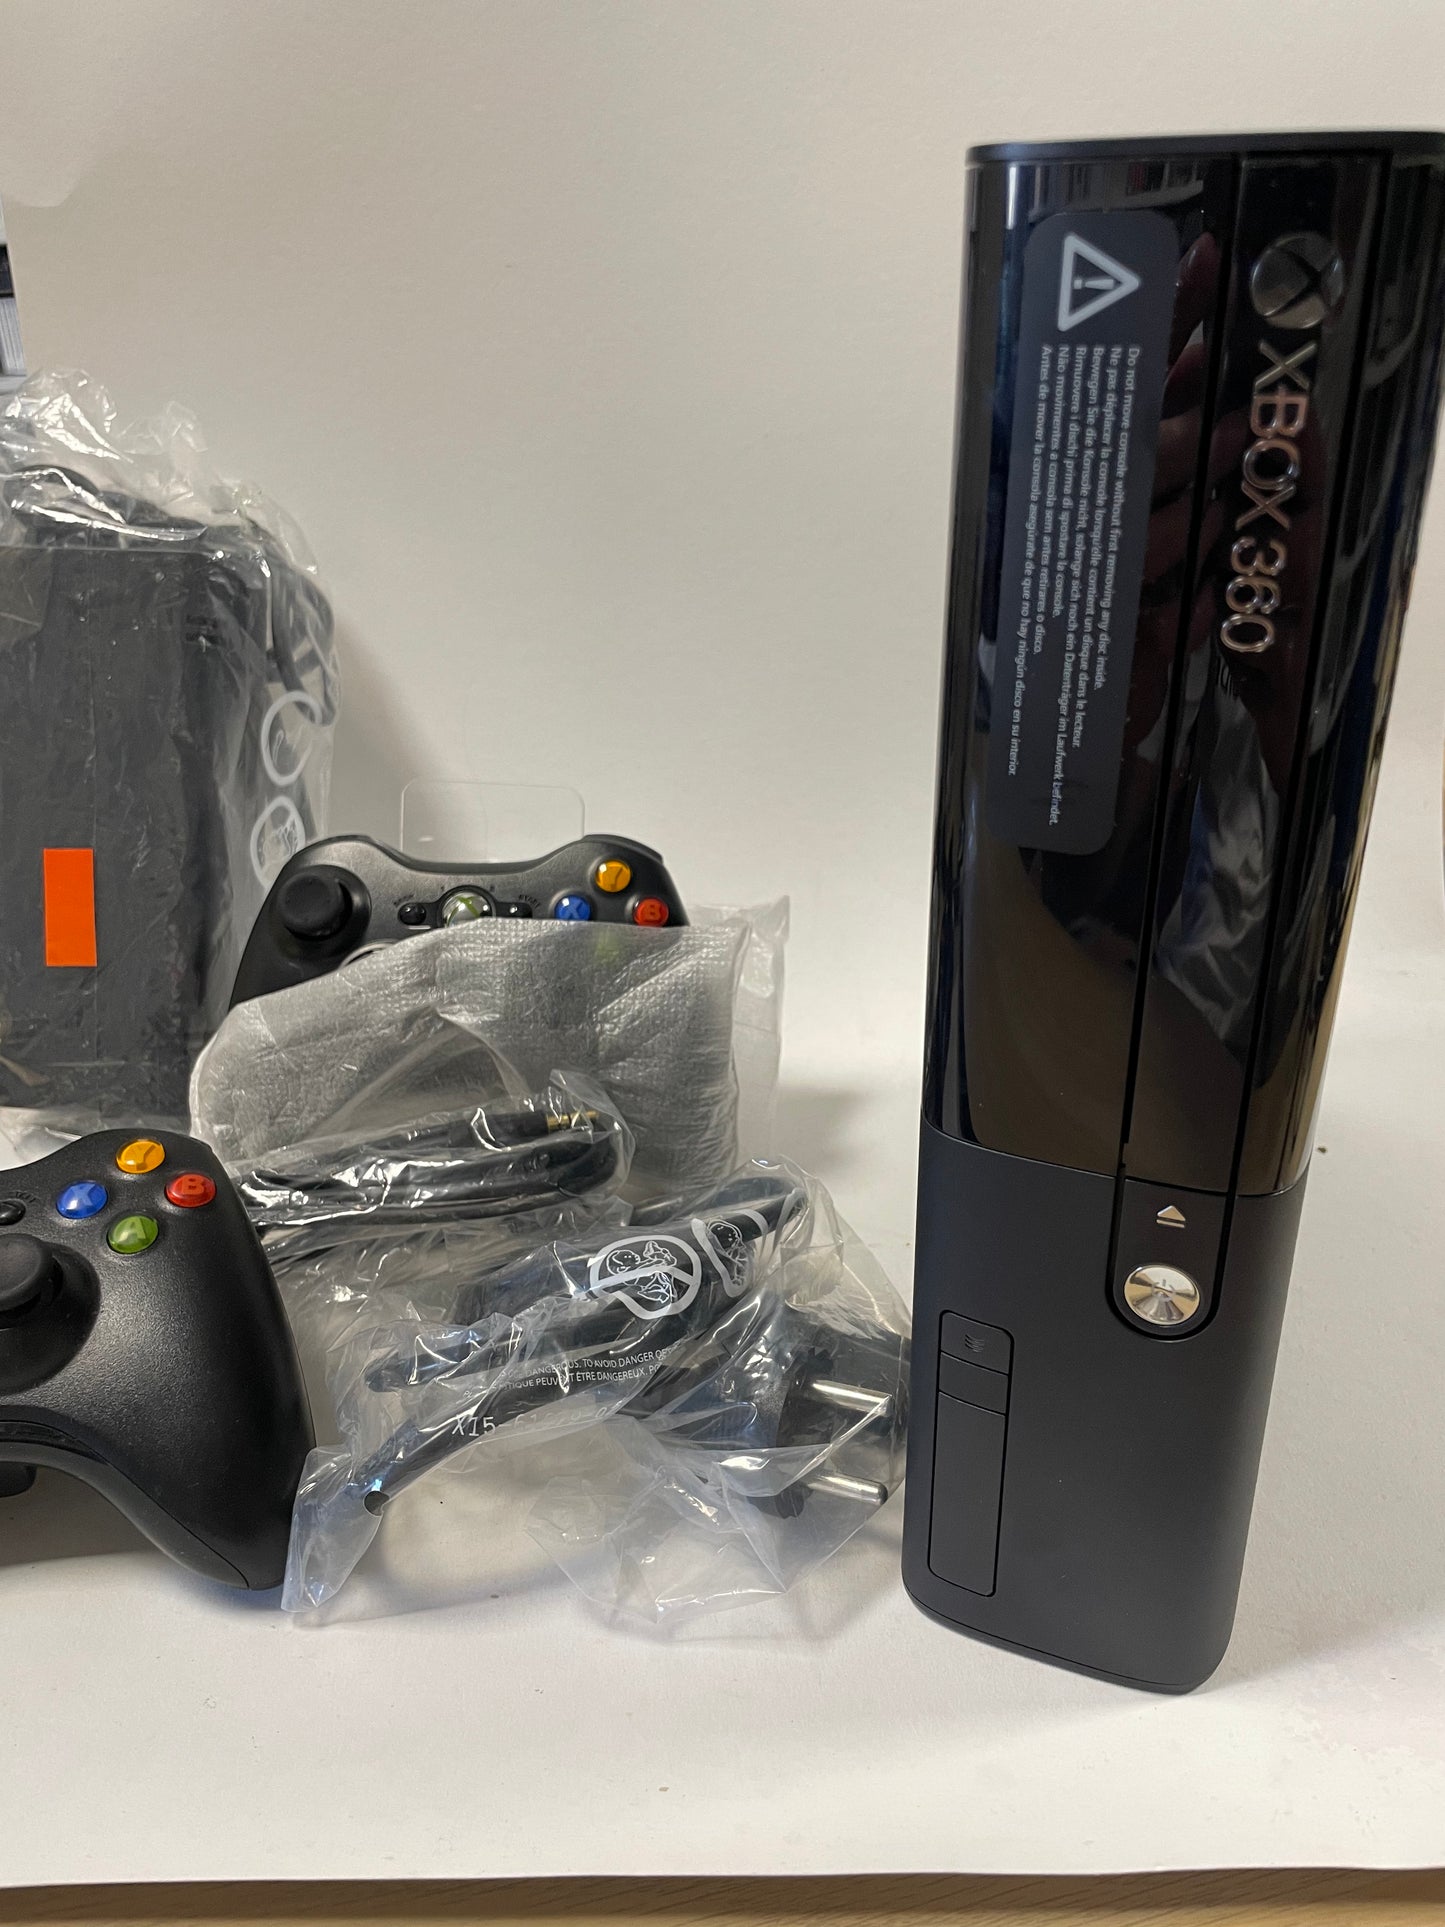 Schwarze Xbox 360 Elite (250 GB) und 2 Controller